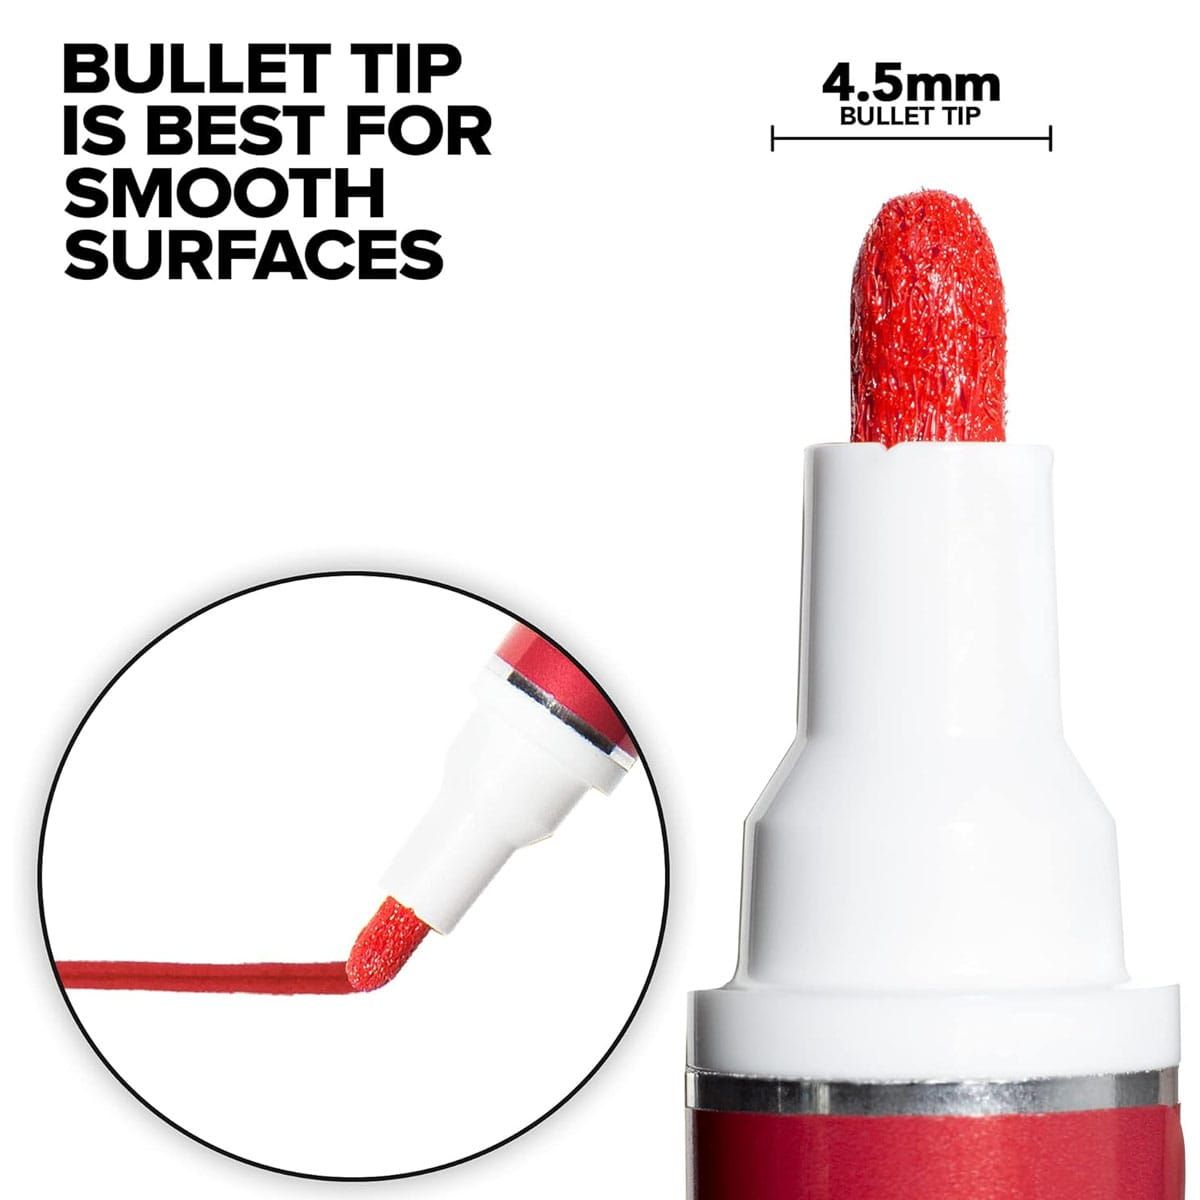 4.5mm Bullet tip